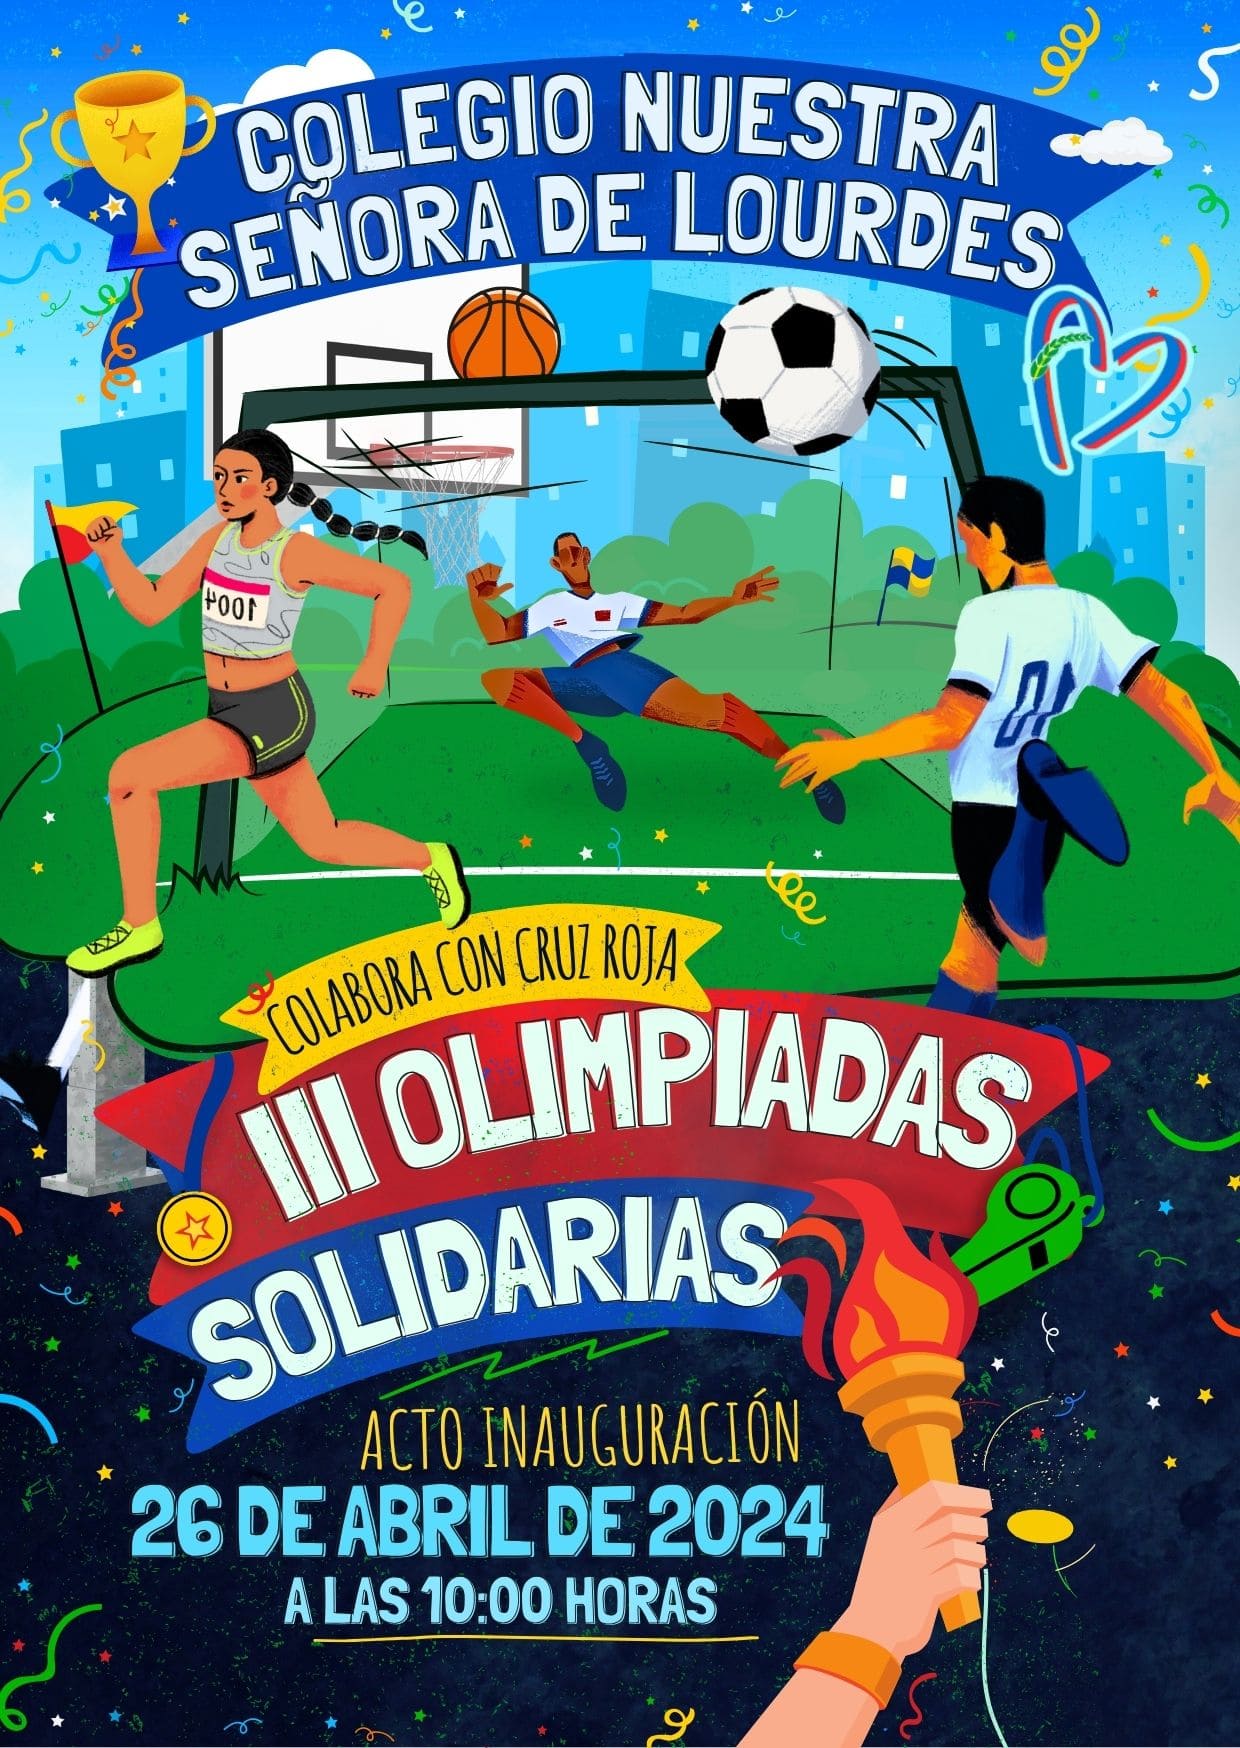 Cartel oficial de las Olimpiadas Solidarias 2024